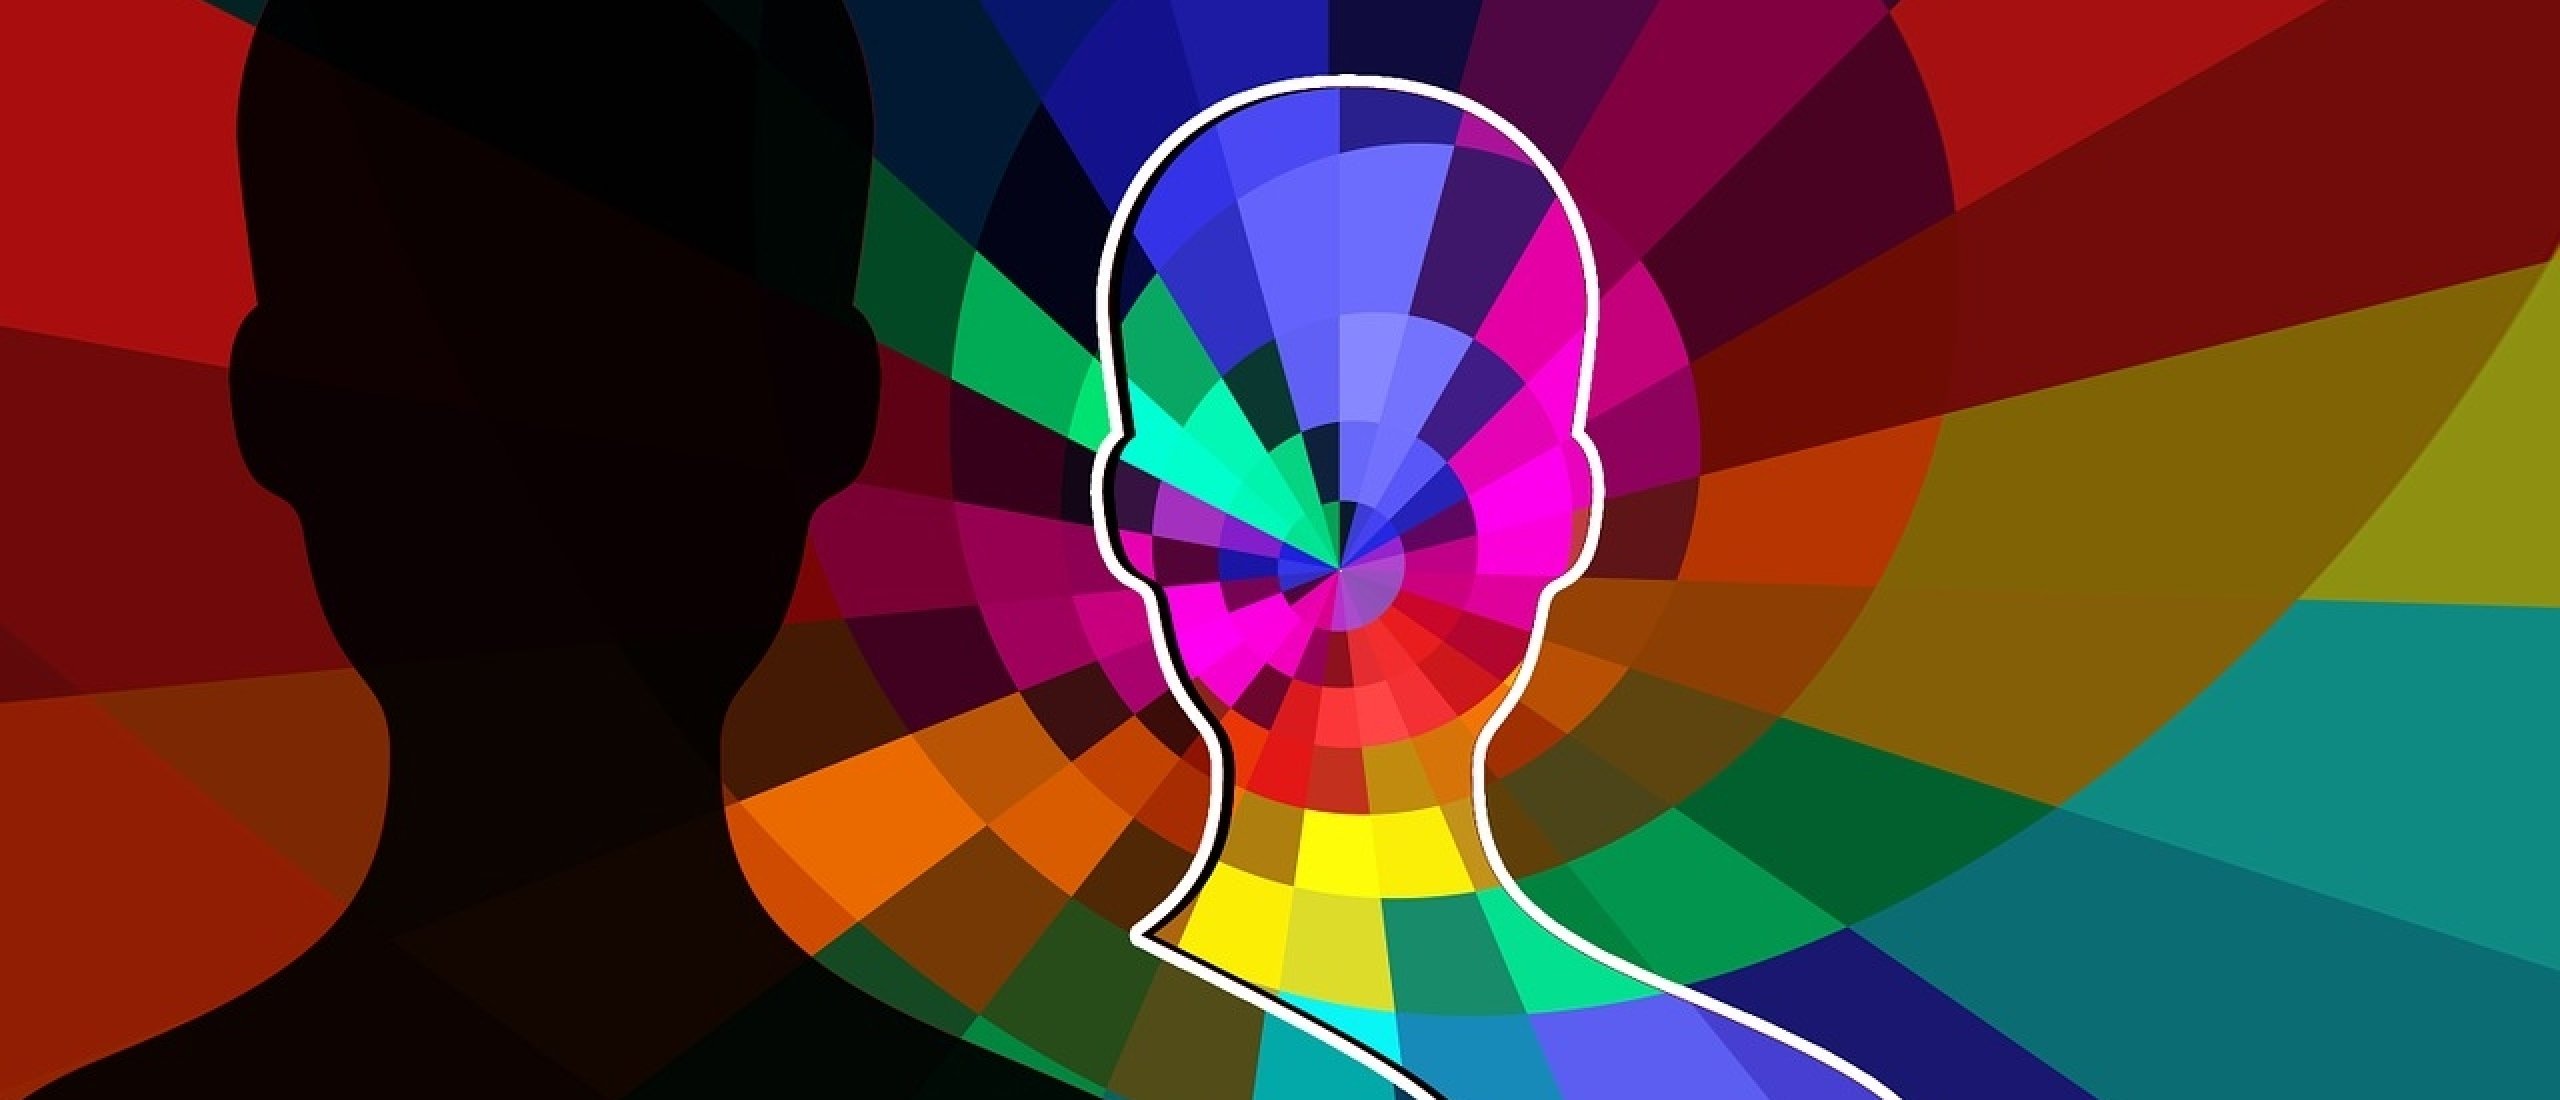 Kleurenpsychologie | kleuren in jouw interieur